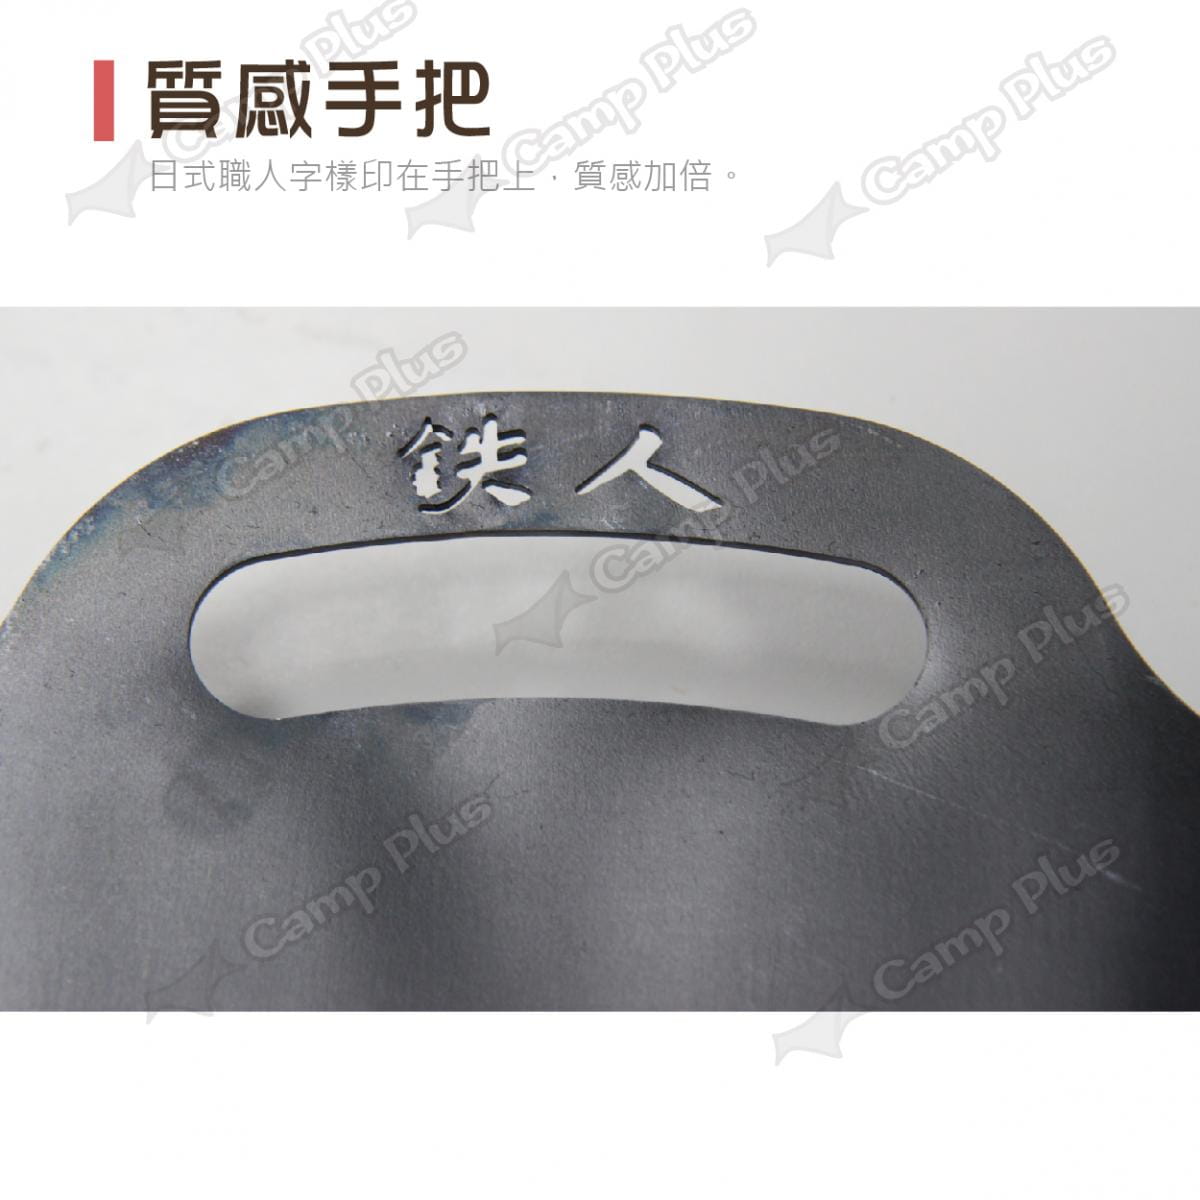 【QUBE】料理鐵人lm 17煎烤盤(含袋) 4